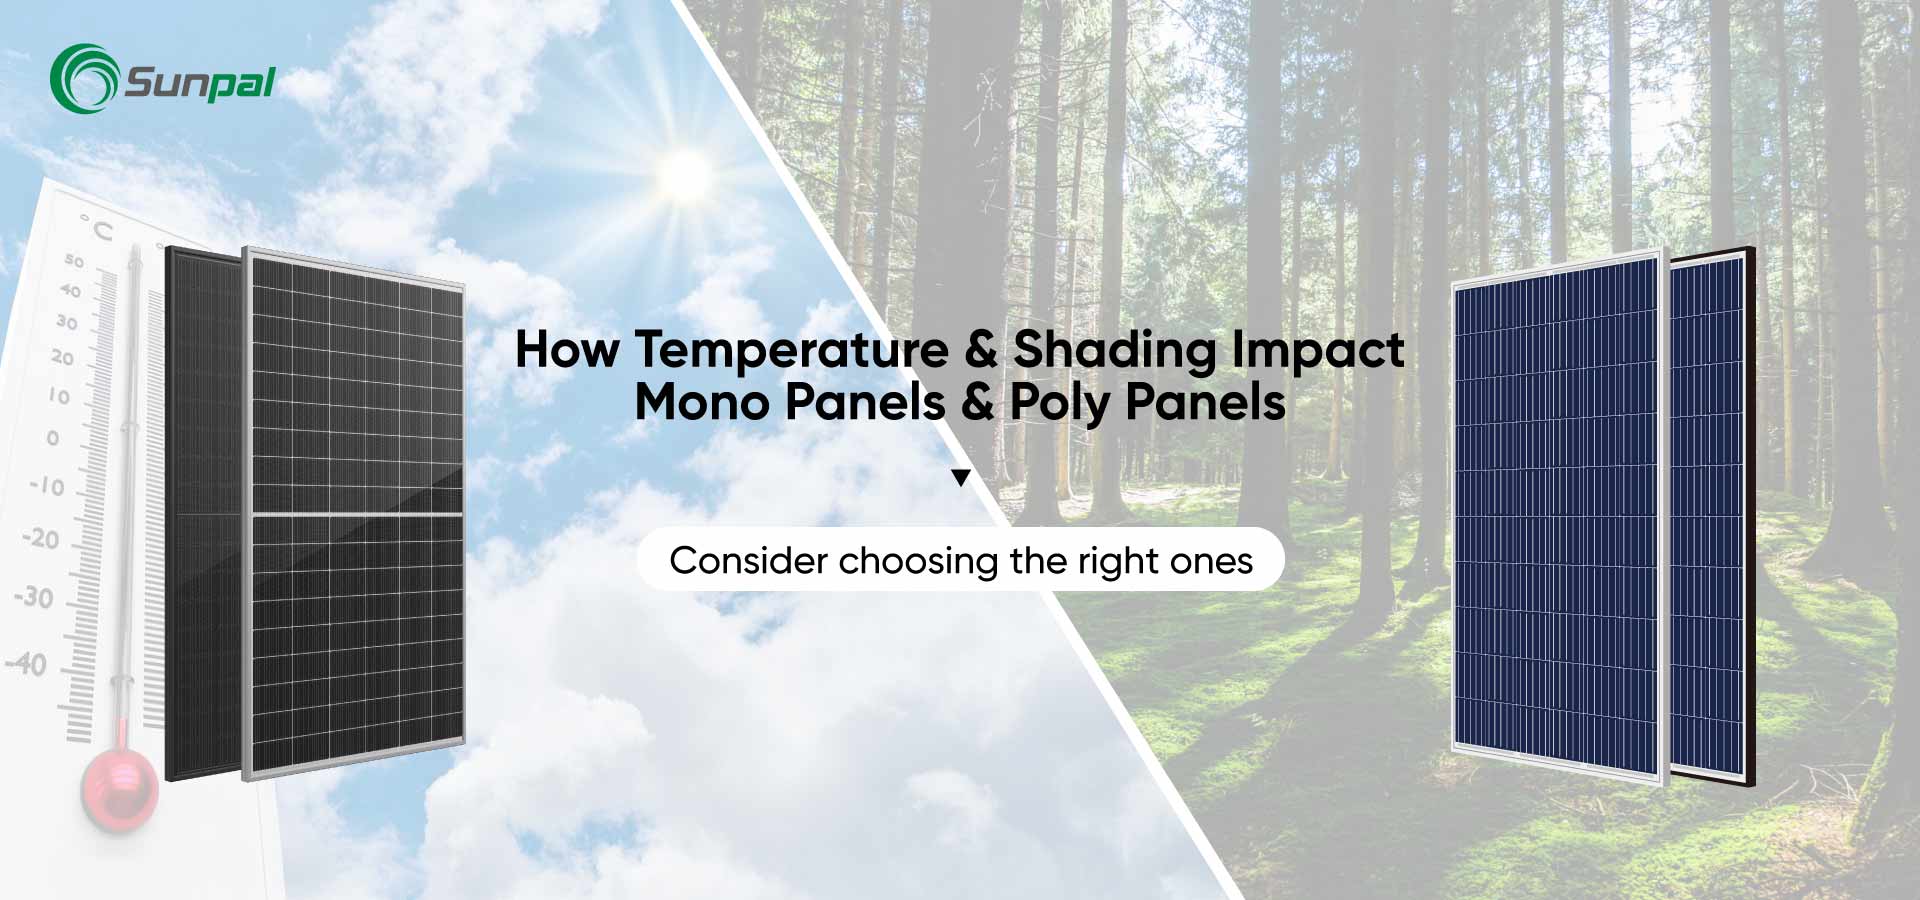 Température et ombrage : impact sur les panneaux mono ou poly